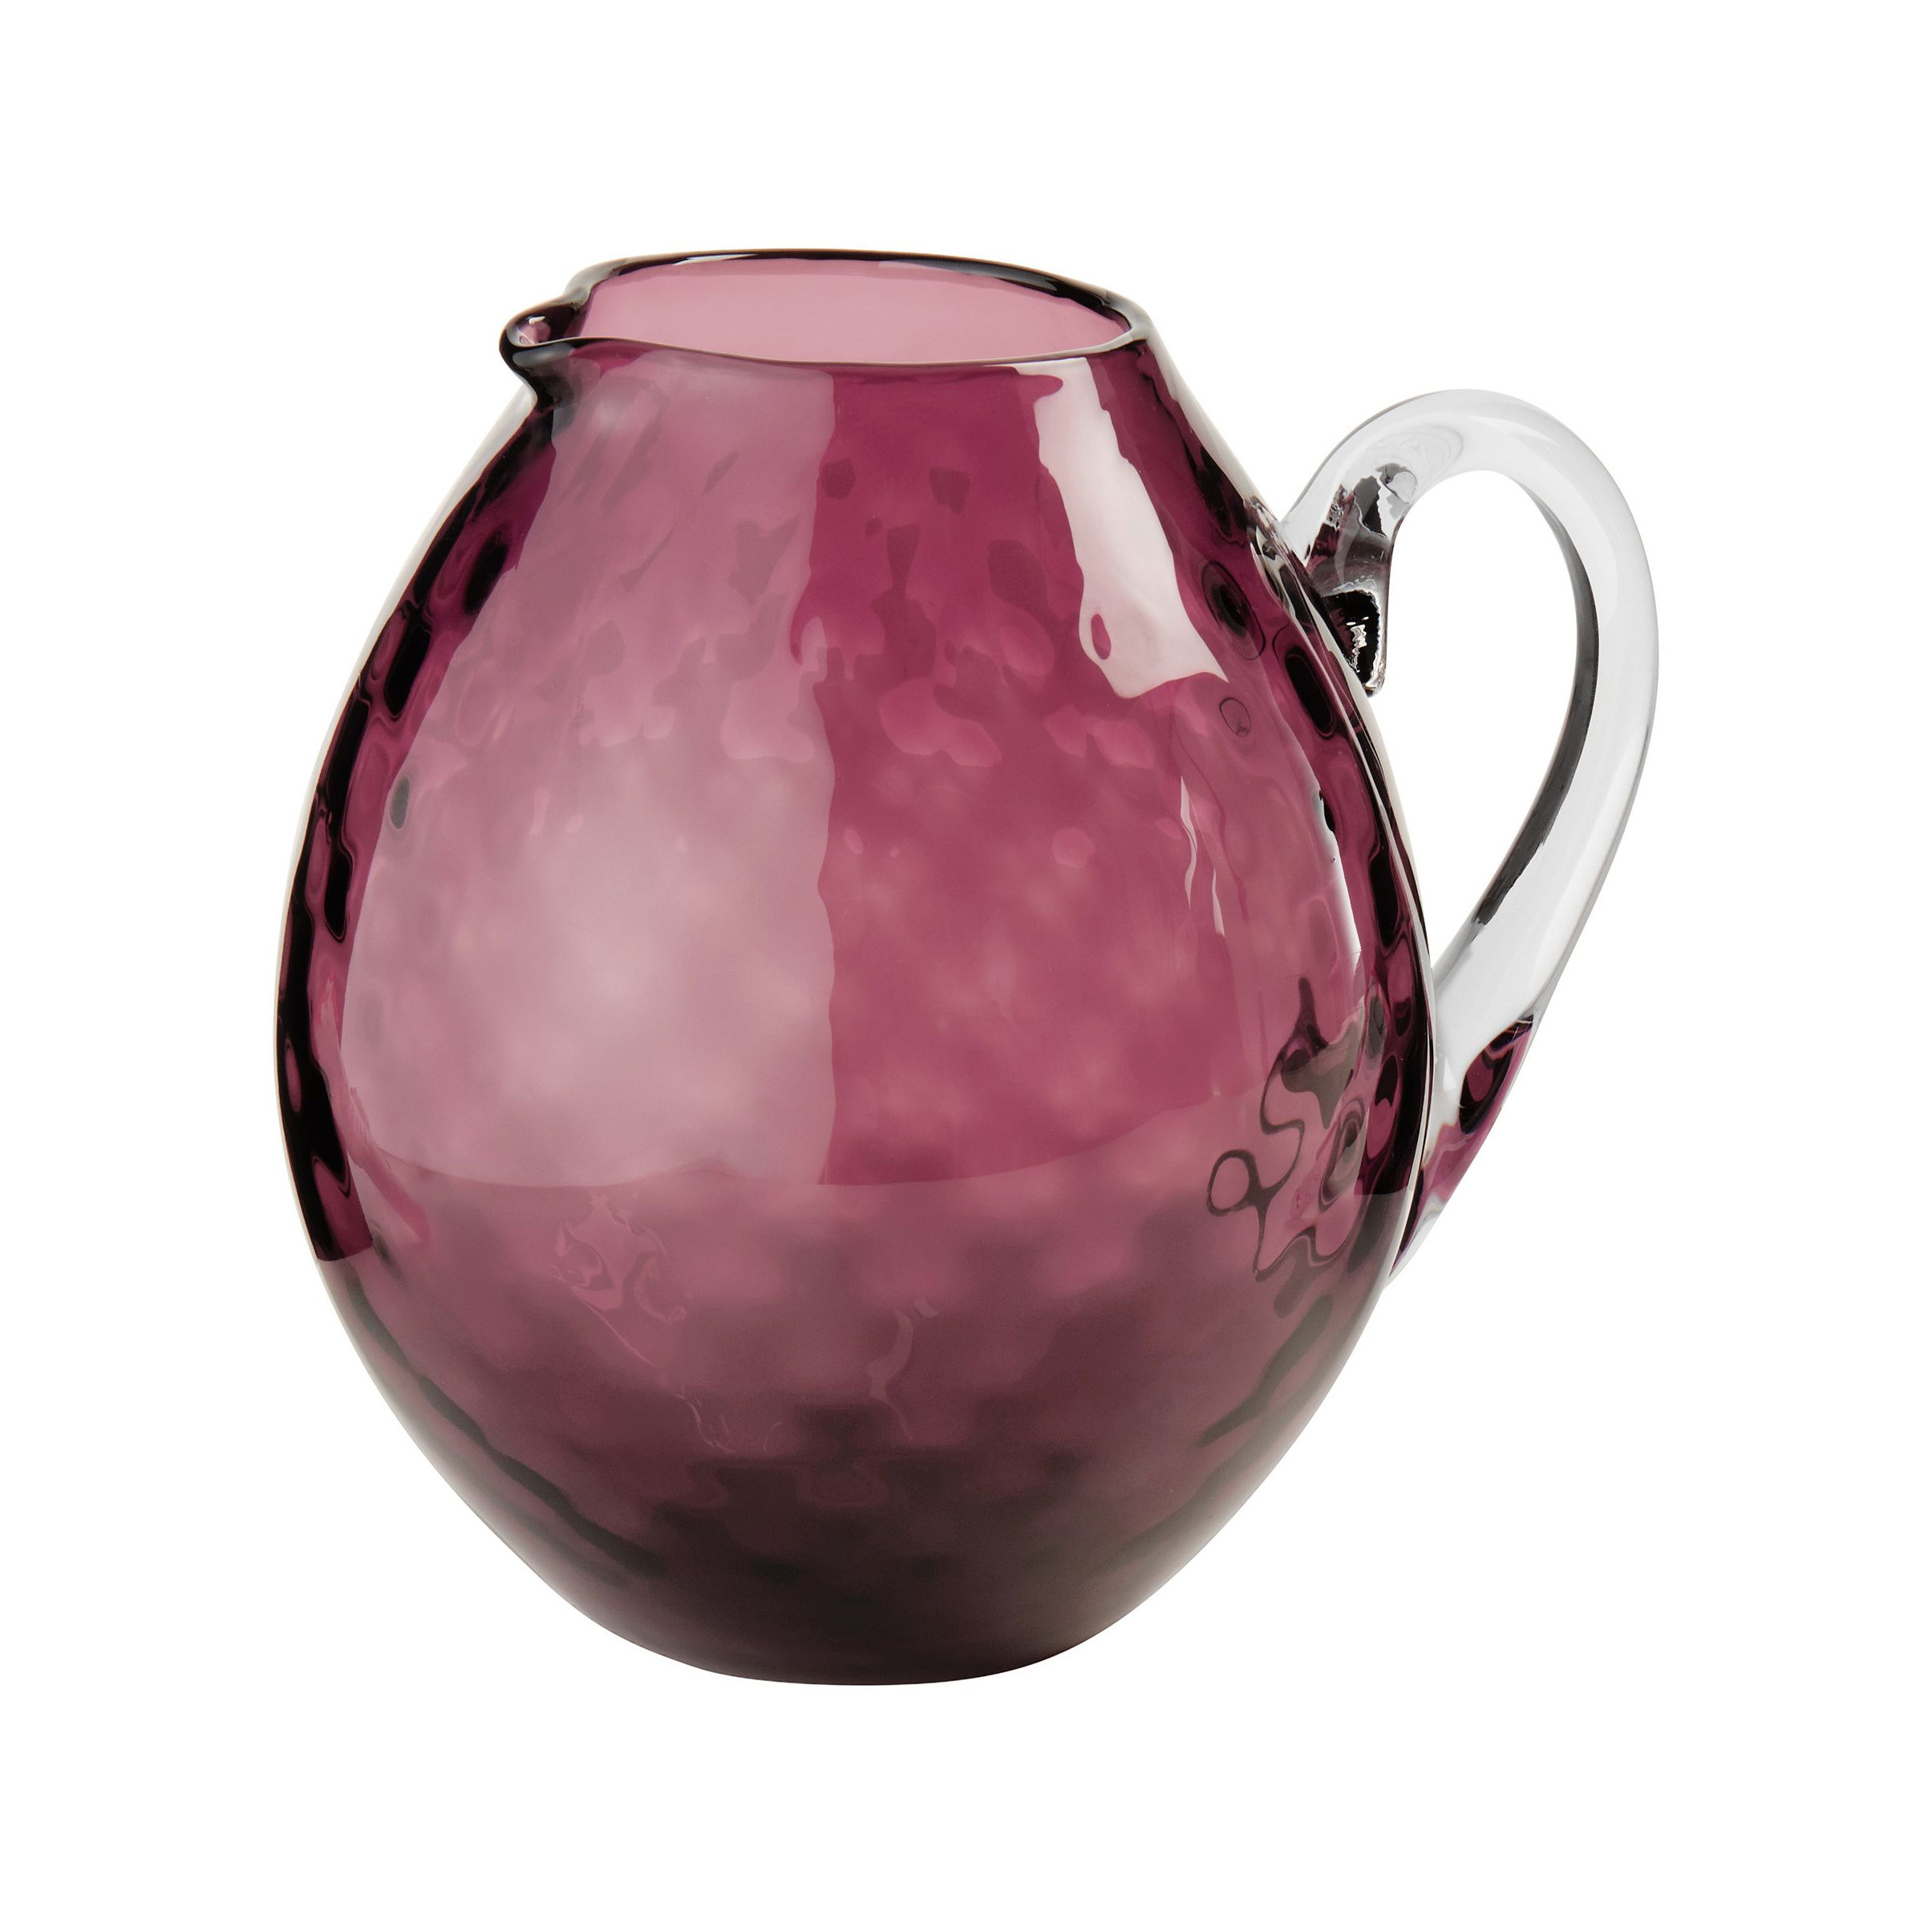 rogaska crystal vase price of luxury fine cut crystal glassware glasses william son inside nasonmoretti jug